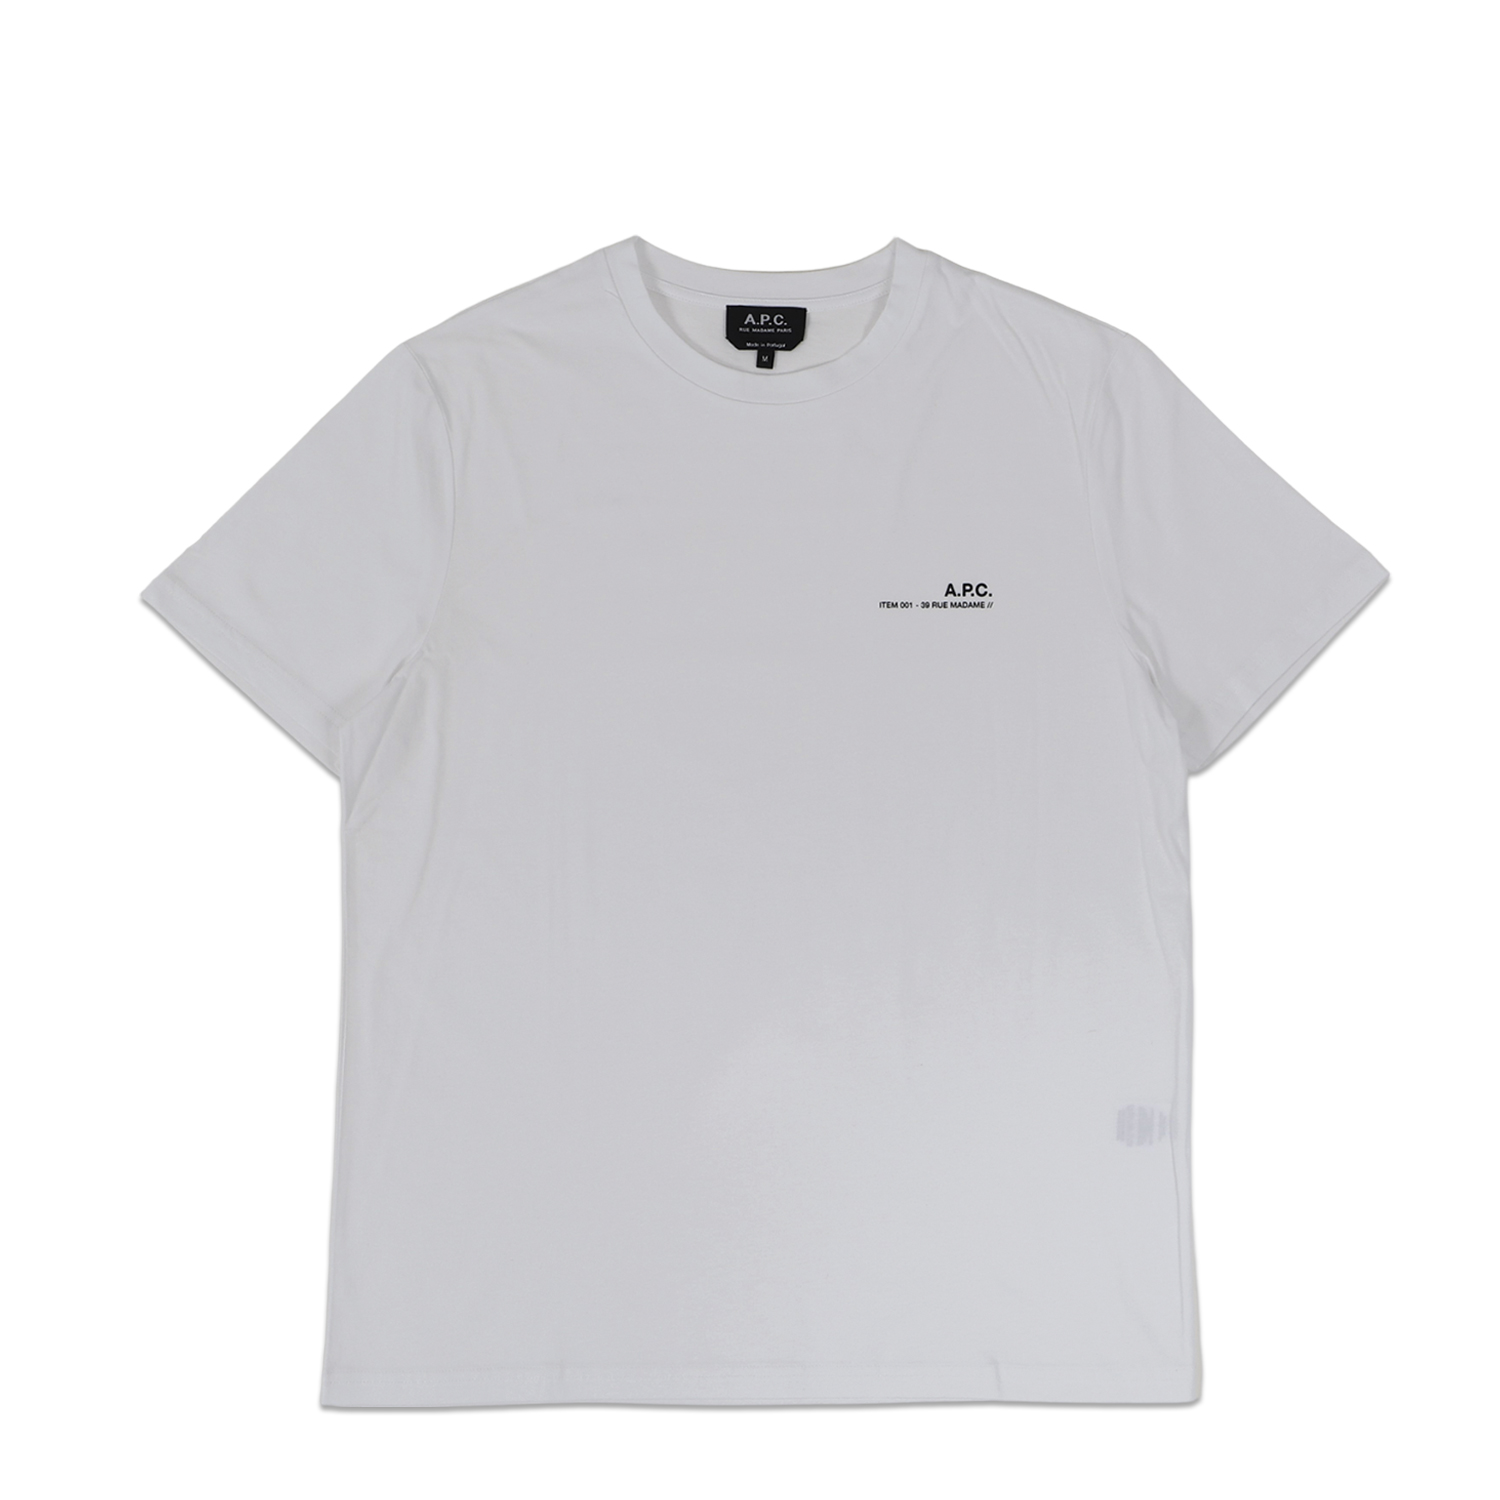 A.P.C. アーペーセー Tシャツ 半袖 メンズ ITEM ホワイト 白 COFBT-H26904